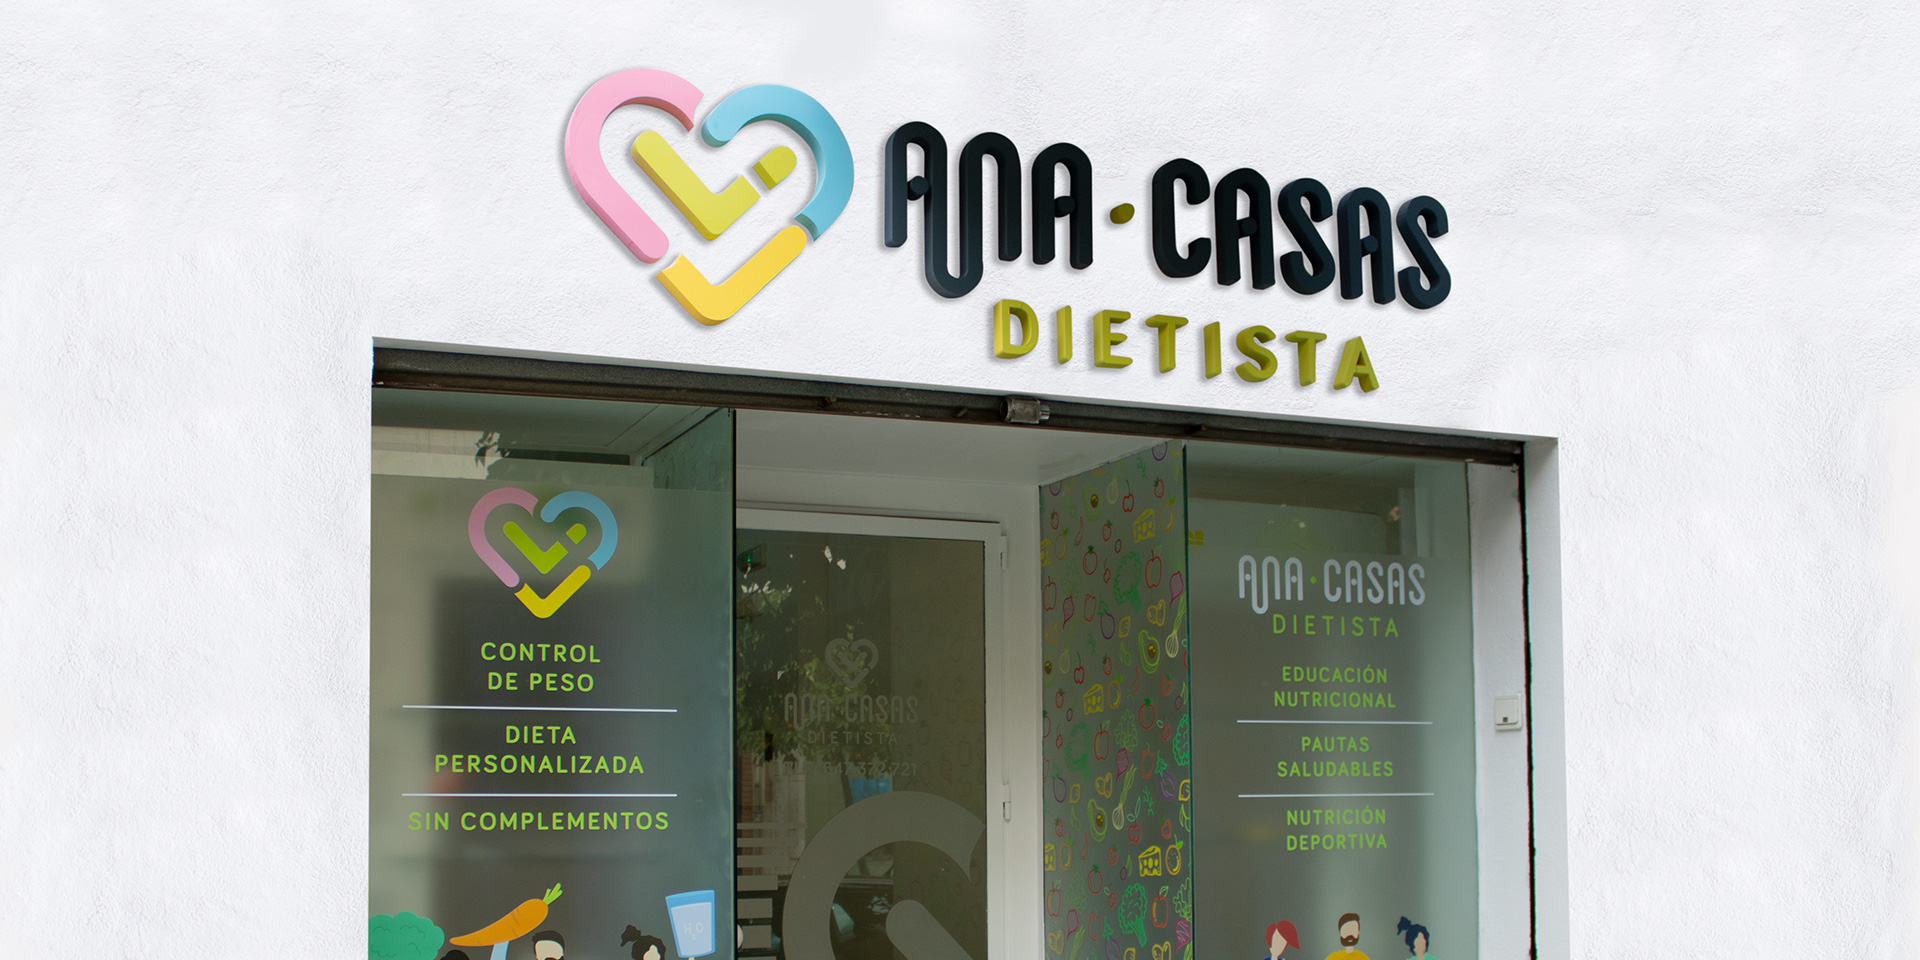 Ana Casas